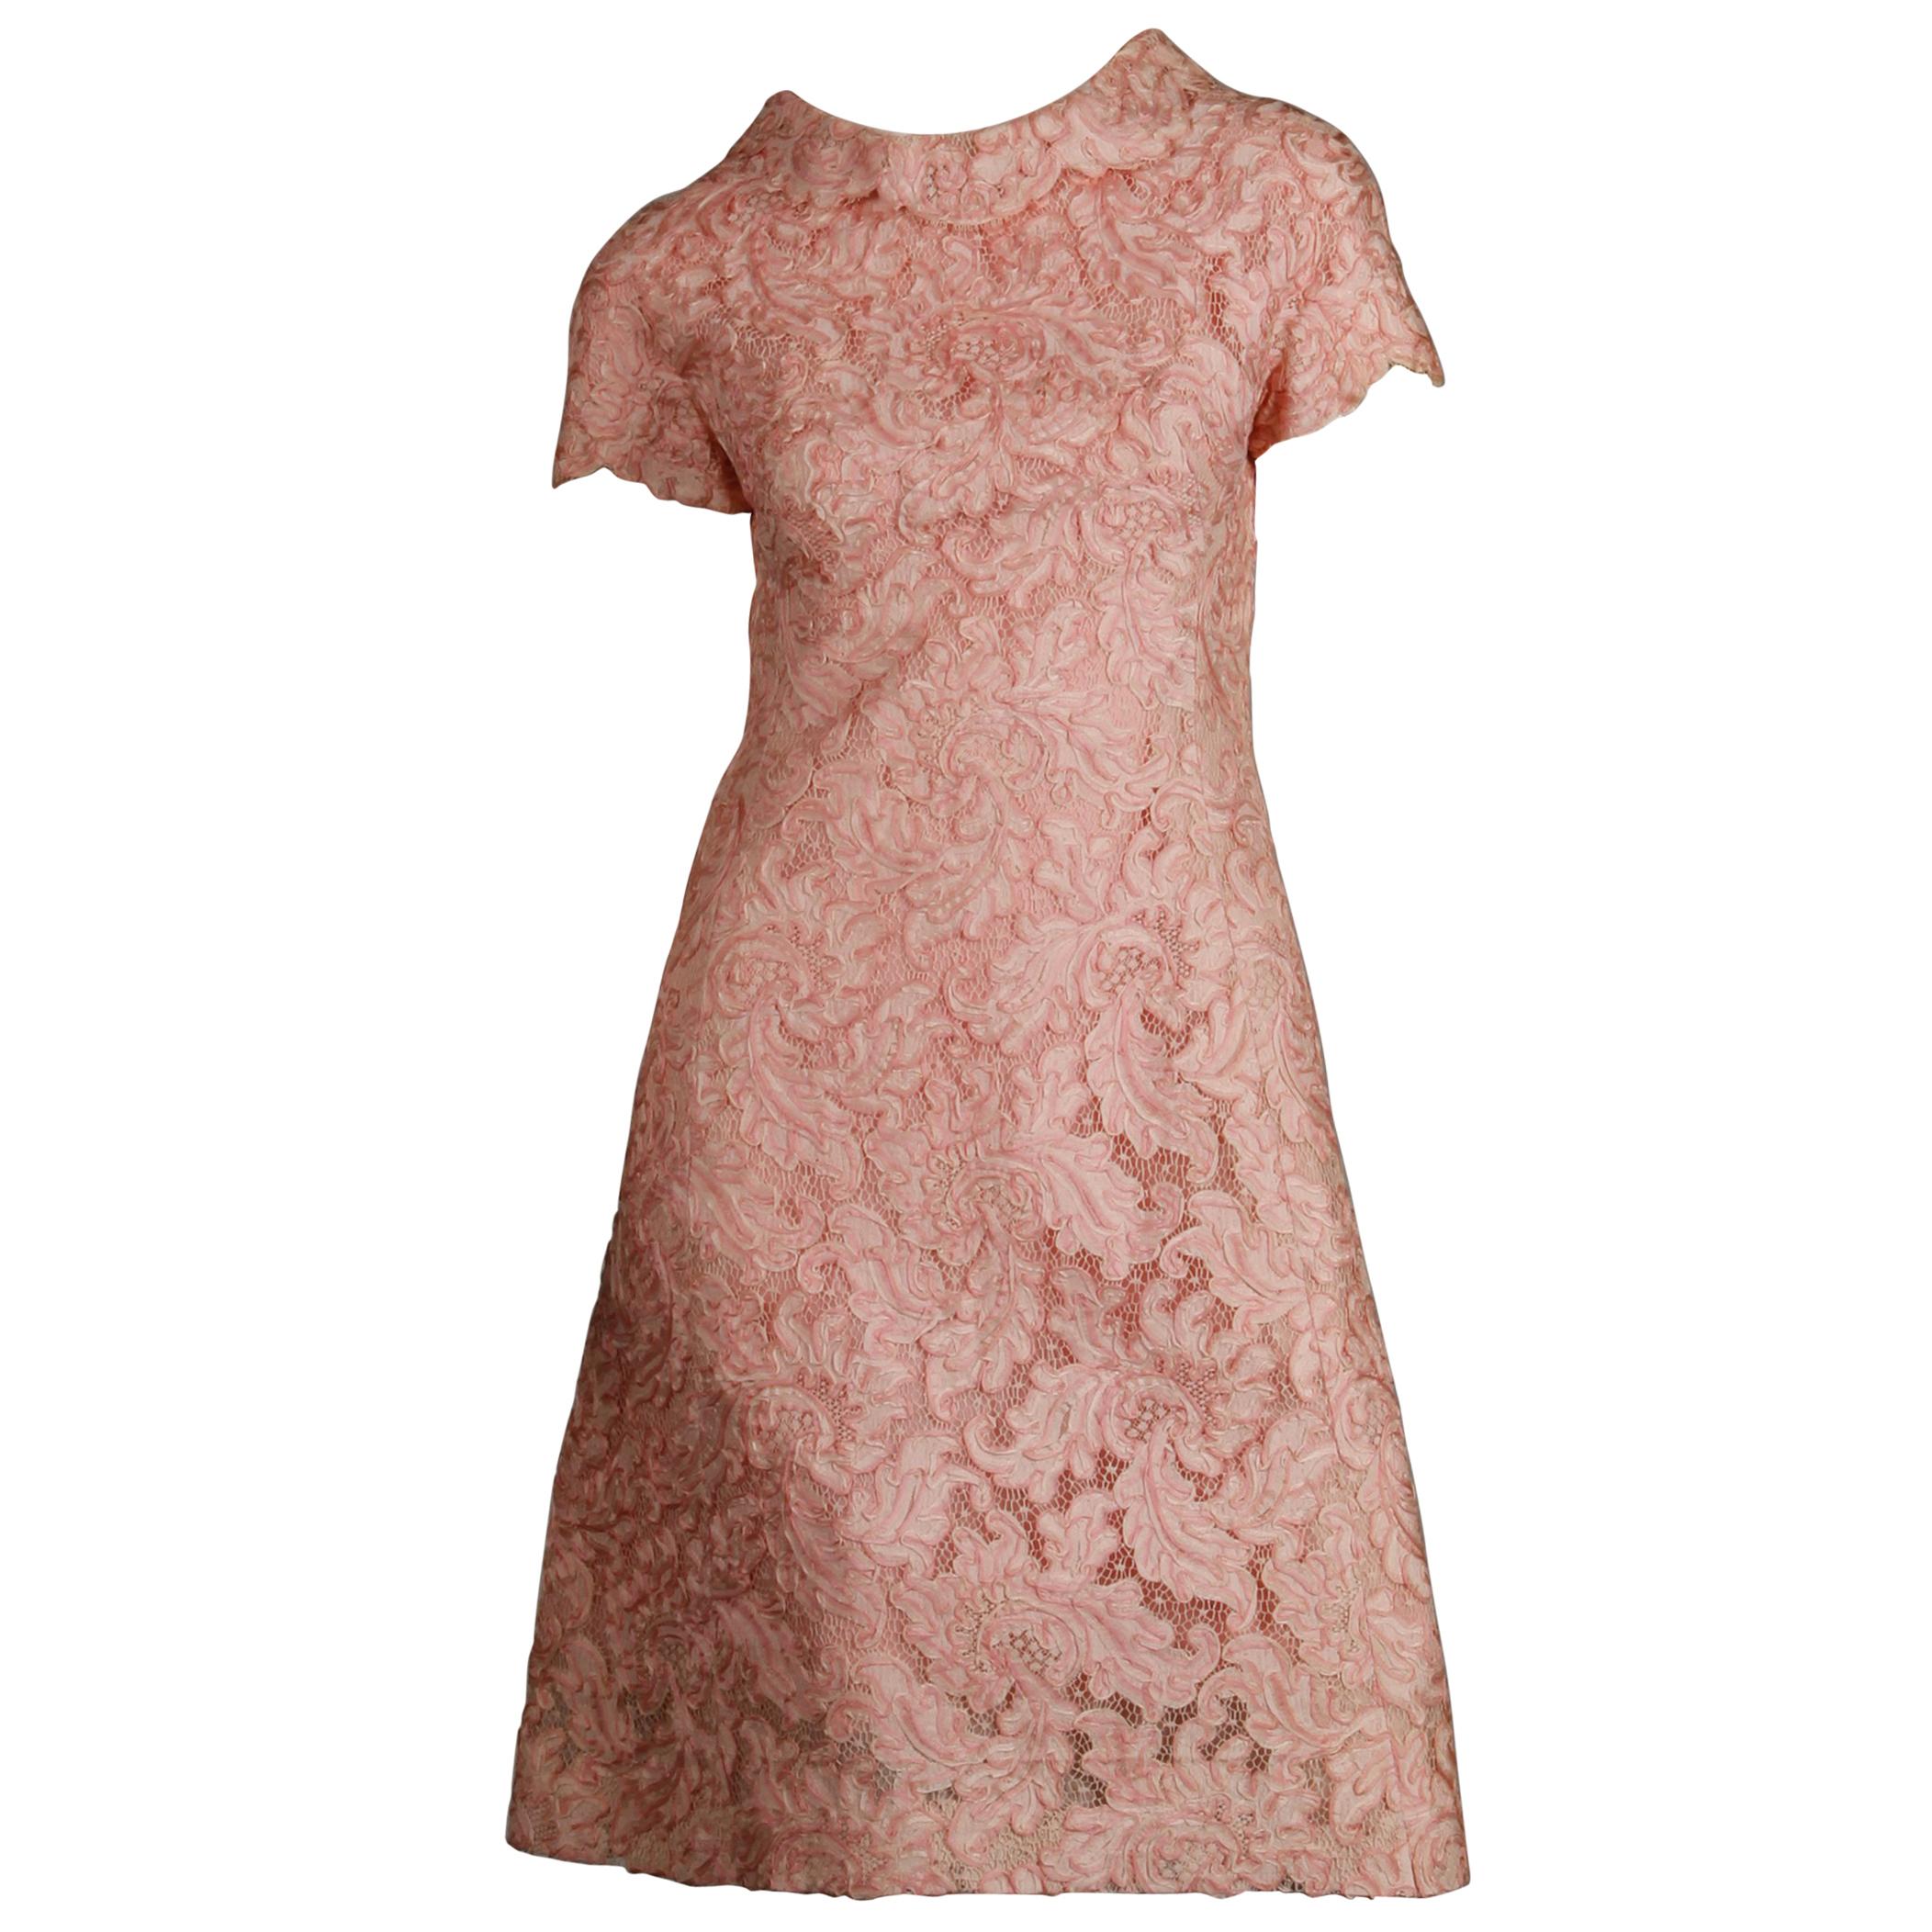 1960s Mollie Parnis Vintage Pink Soutache + Scalloped Lace Shift Dress Dress For Sale